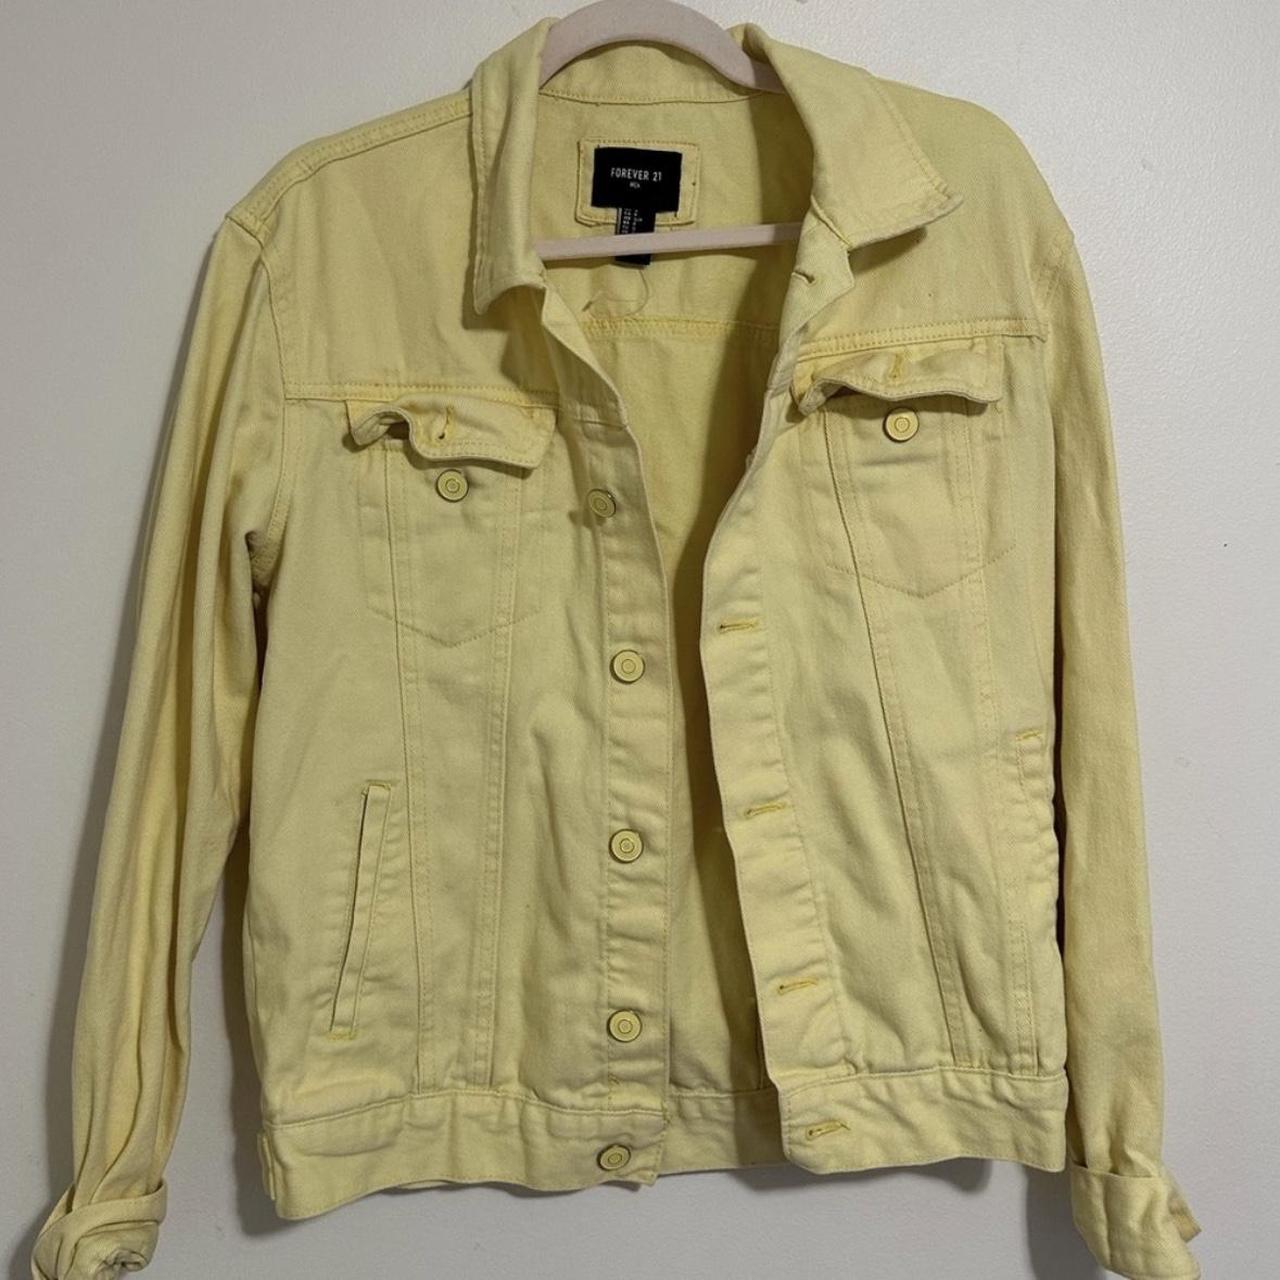 Yellow Jean Jacket #yellow #jacket #cute #winter - Depop